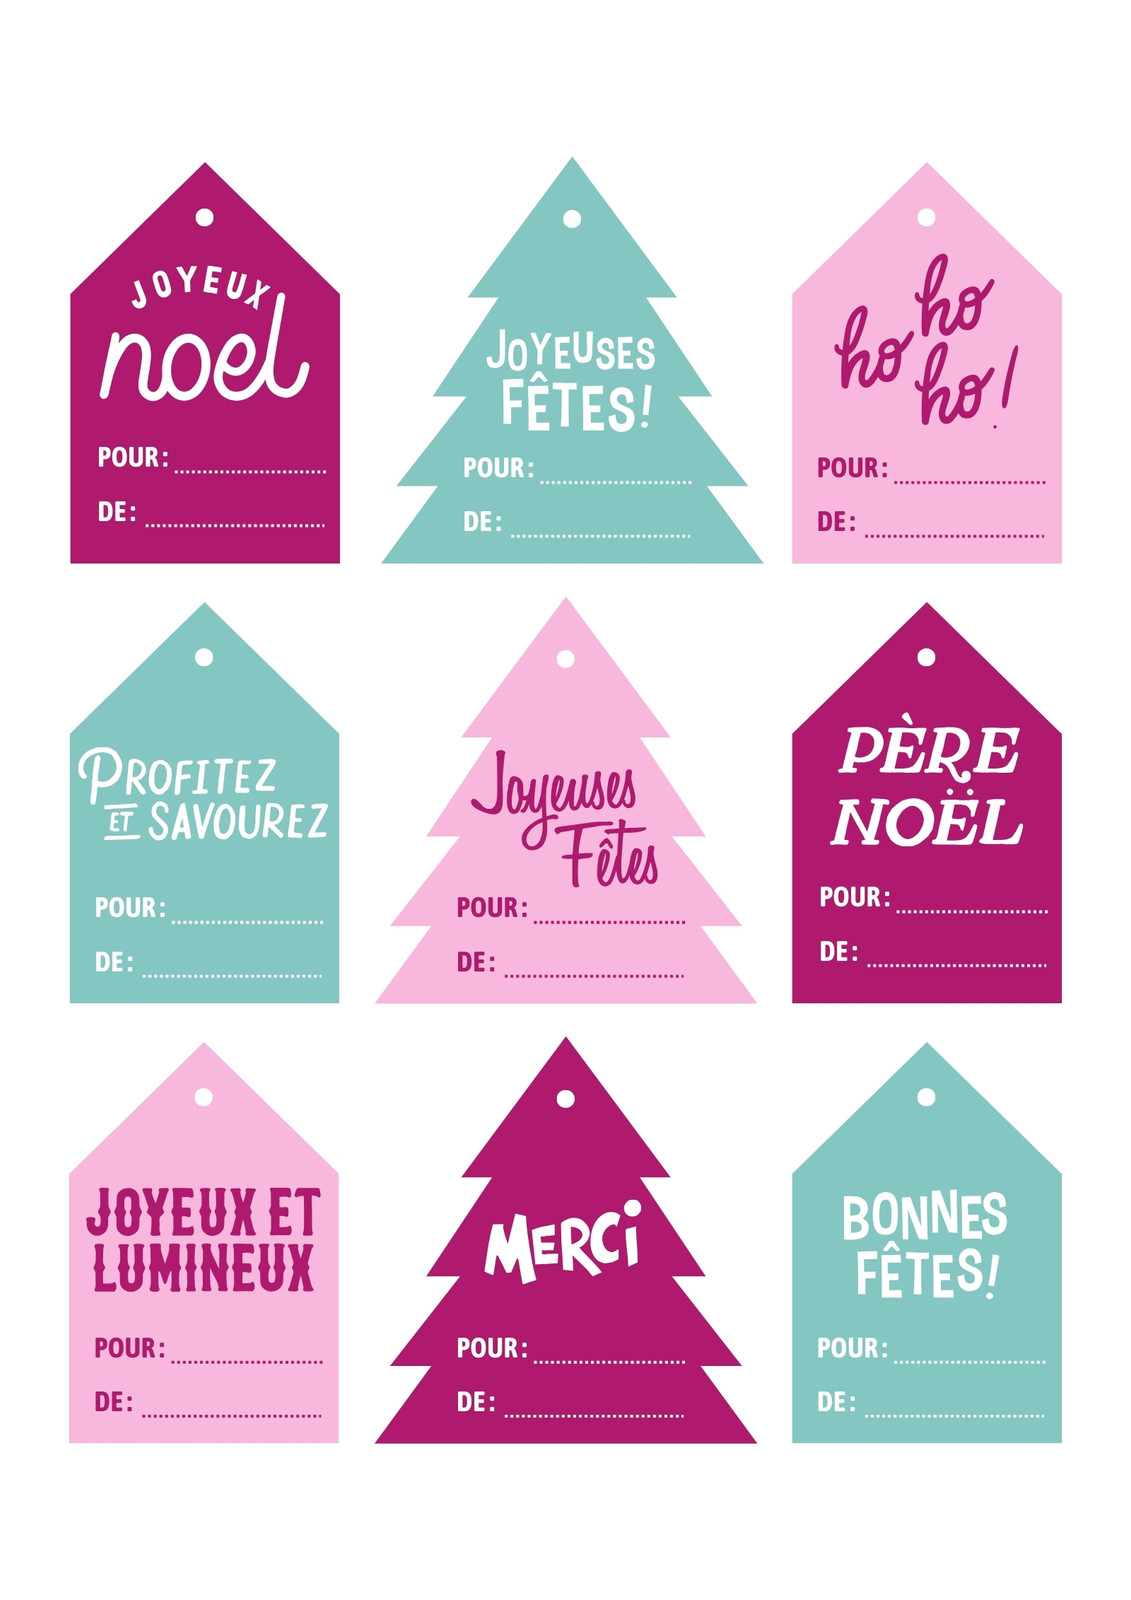 Sticker Noël 6 étiquettes pour cadeaux – Stickers STICKERS FÊTES